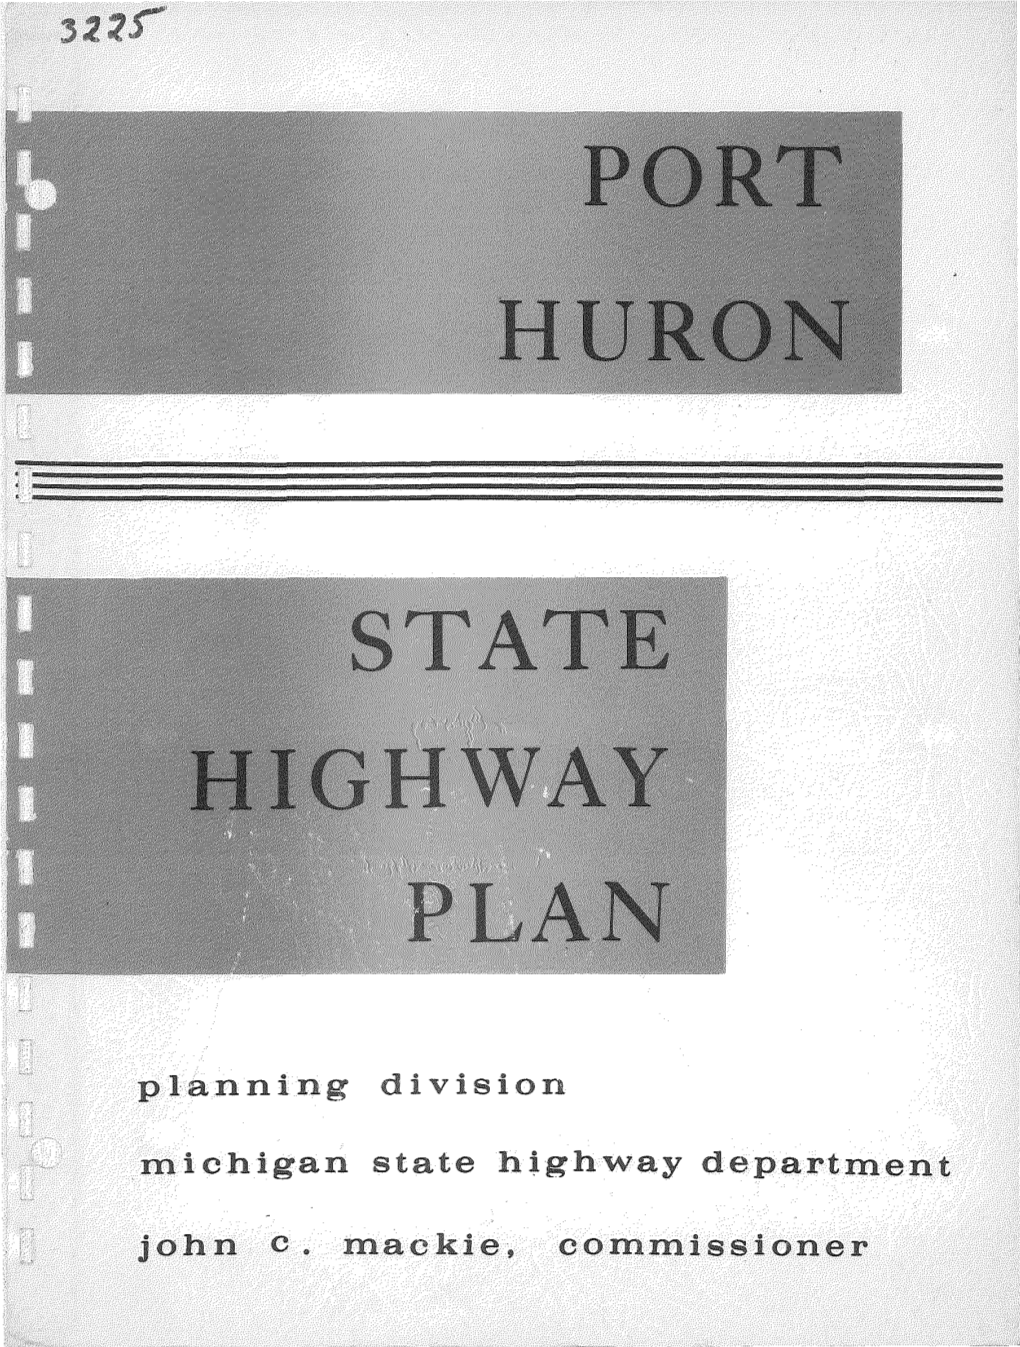 Port Huron State Highway Plan"